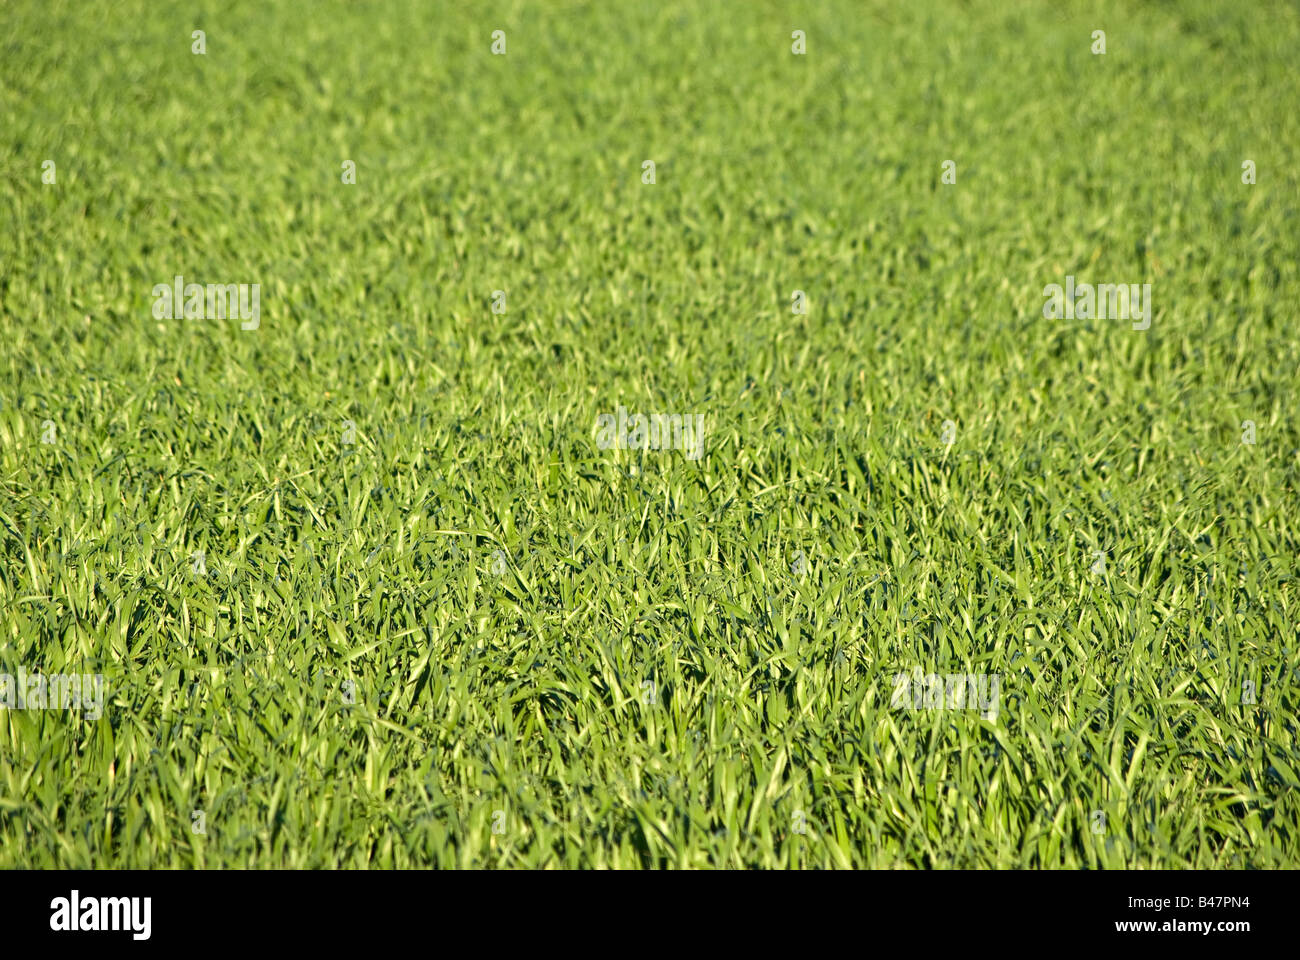 Grande image d'un fond d'herbe verte luxuriante Banque D'Images